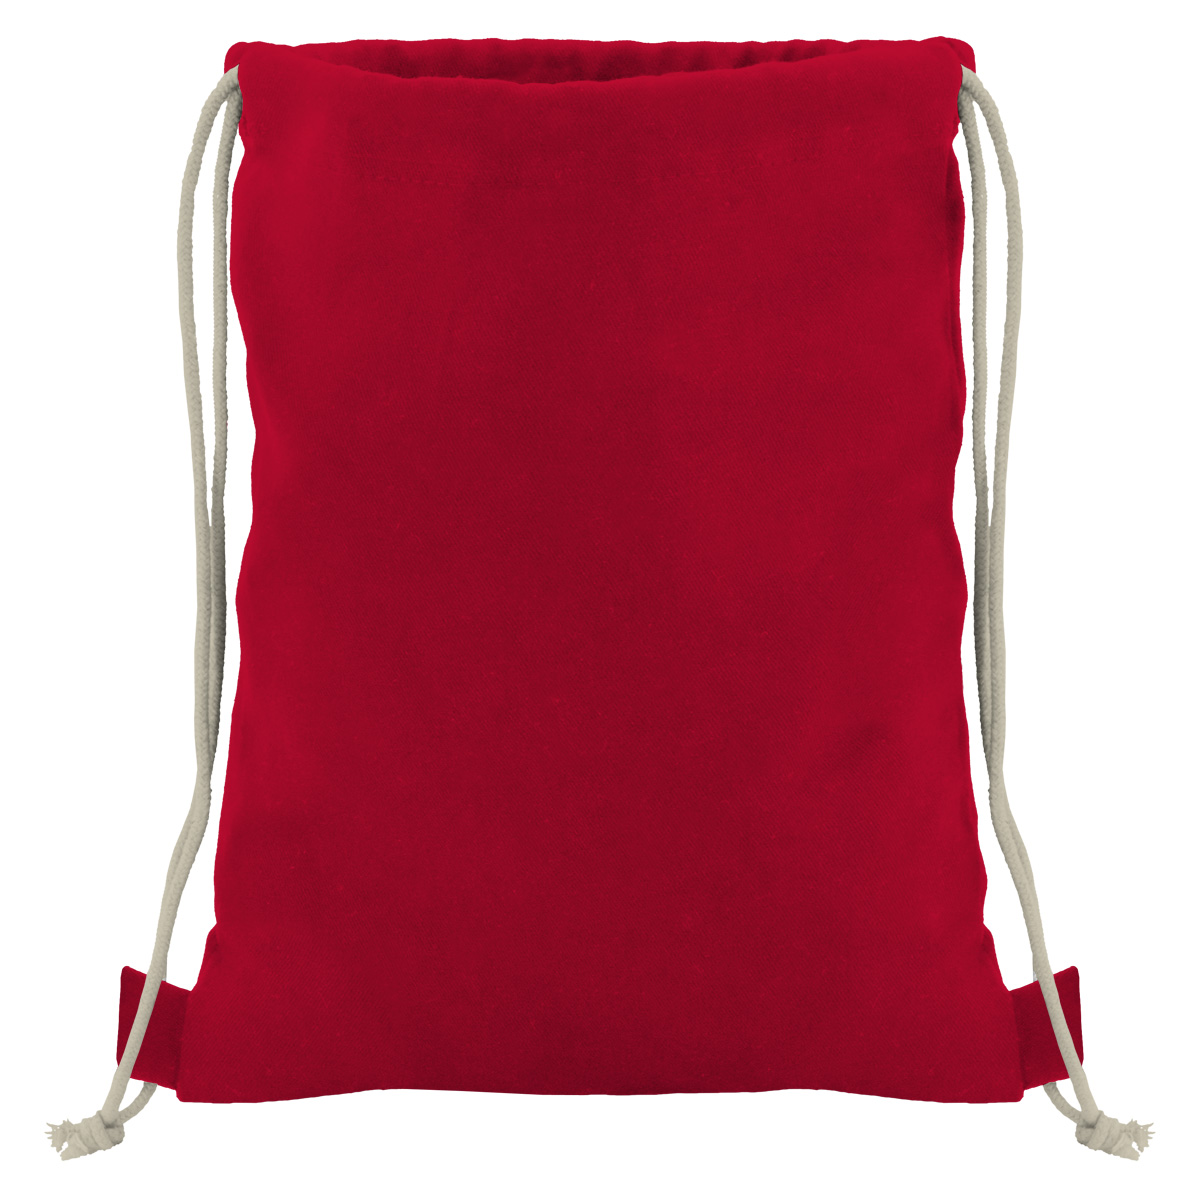 Baumwollrucksack mit robuster Kordel - rot/natur - 36 cm x 44 cm